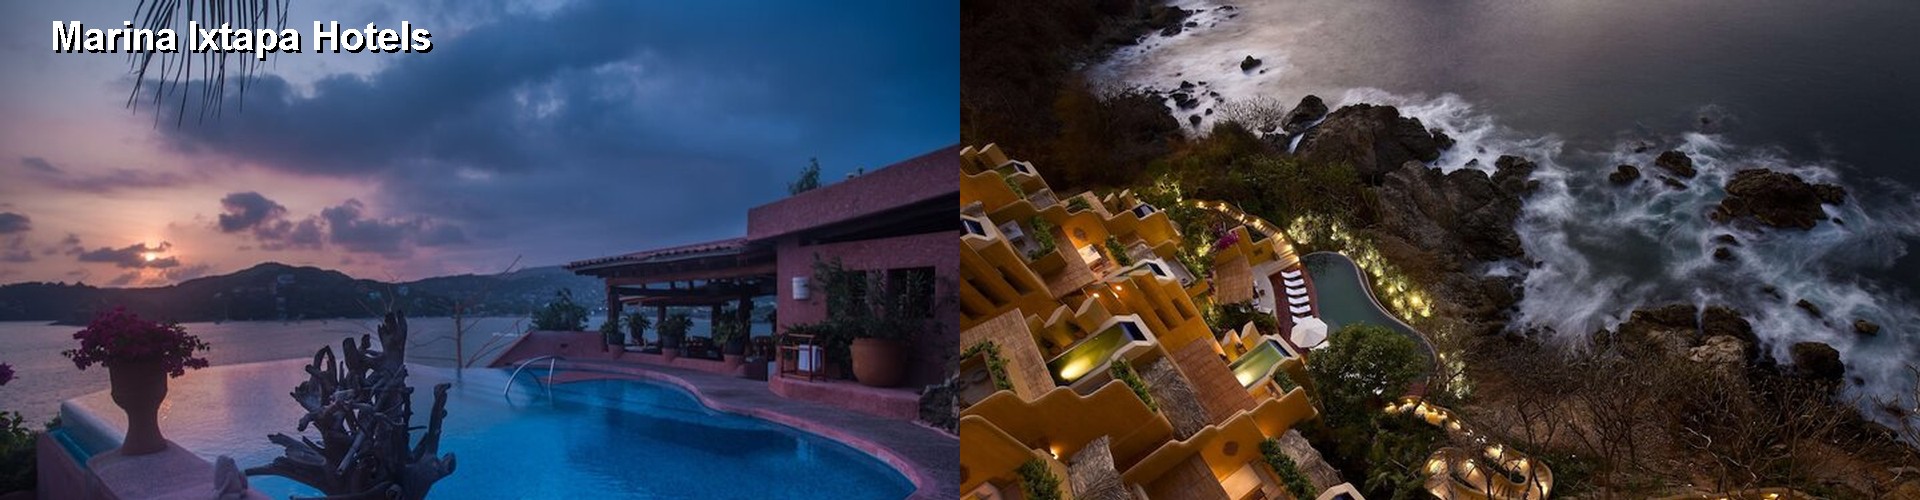 5 Best Hotels near Marina Ixtapa